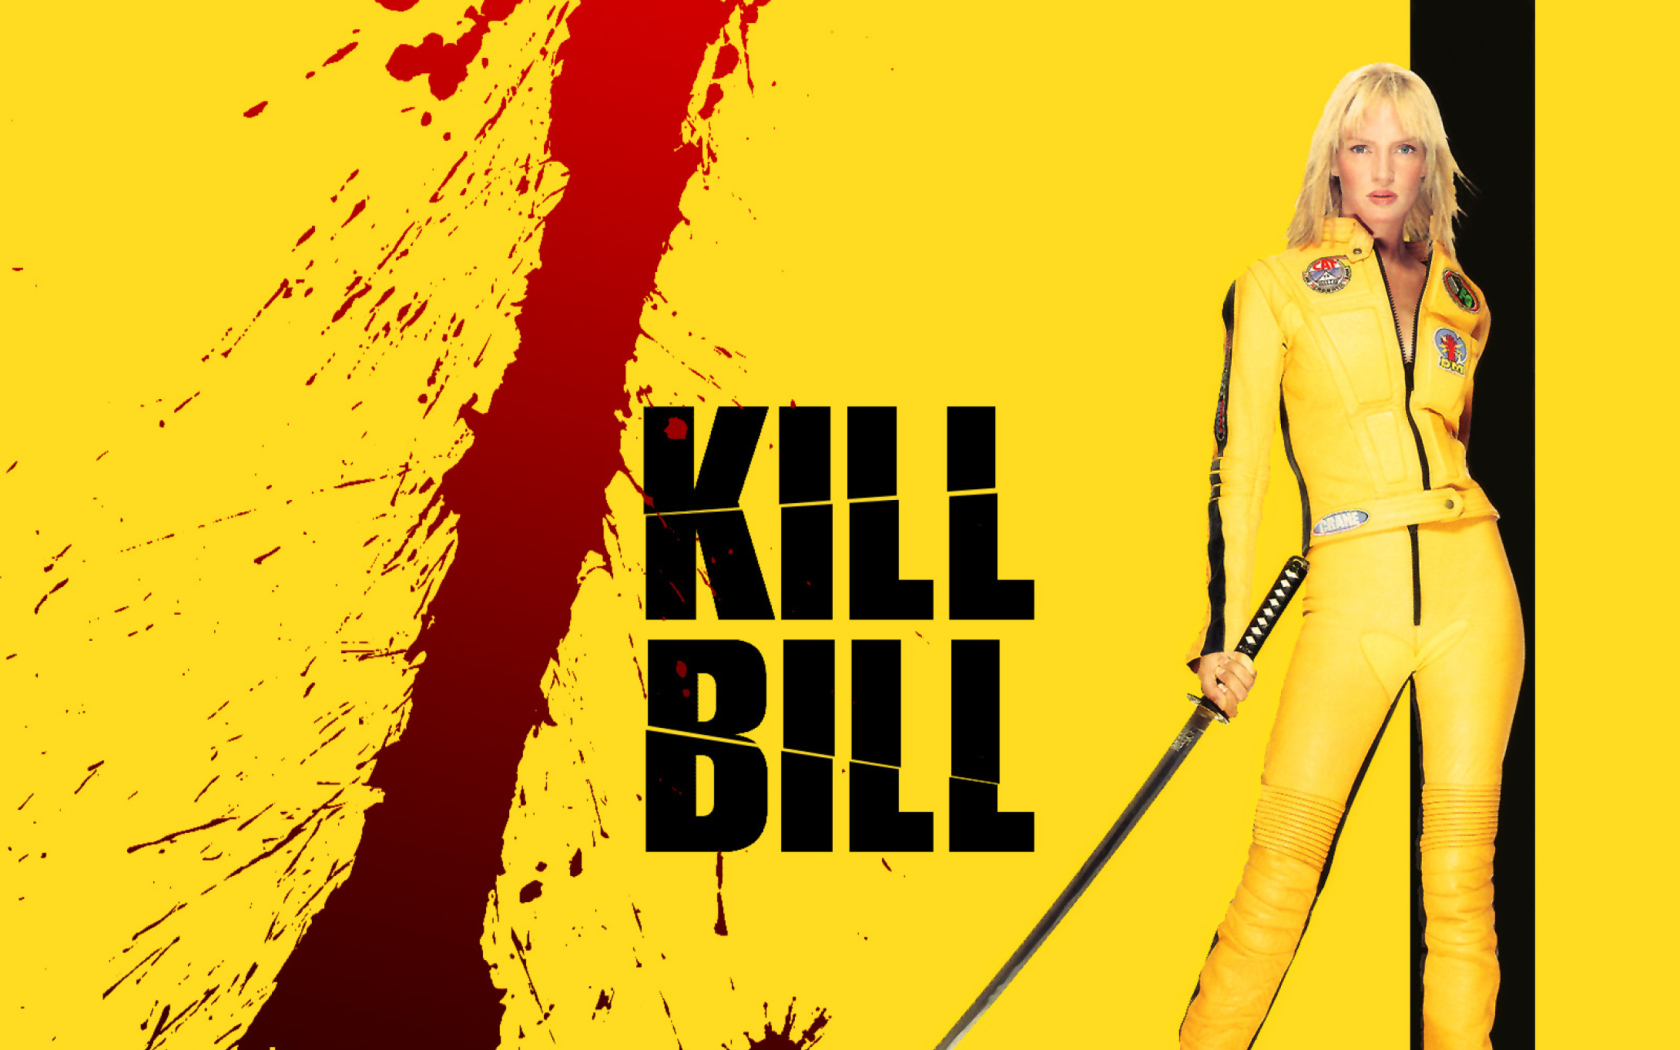 Kill Bill wallpaper 1680x1050